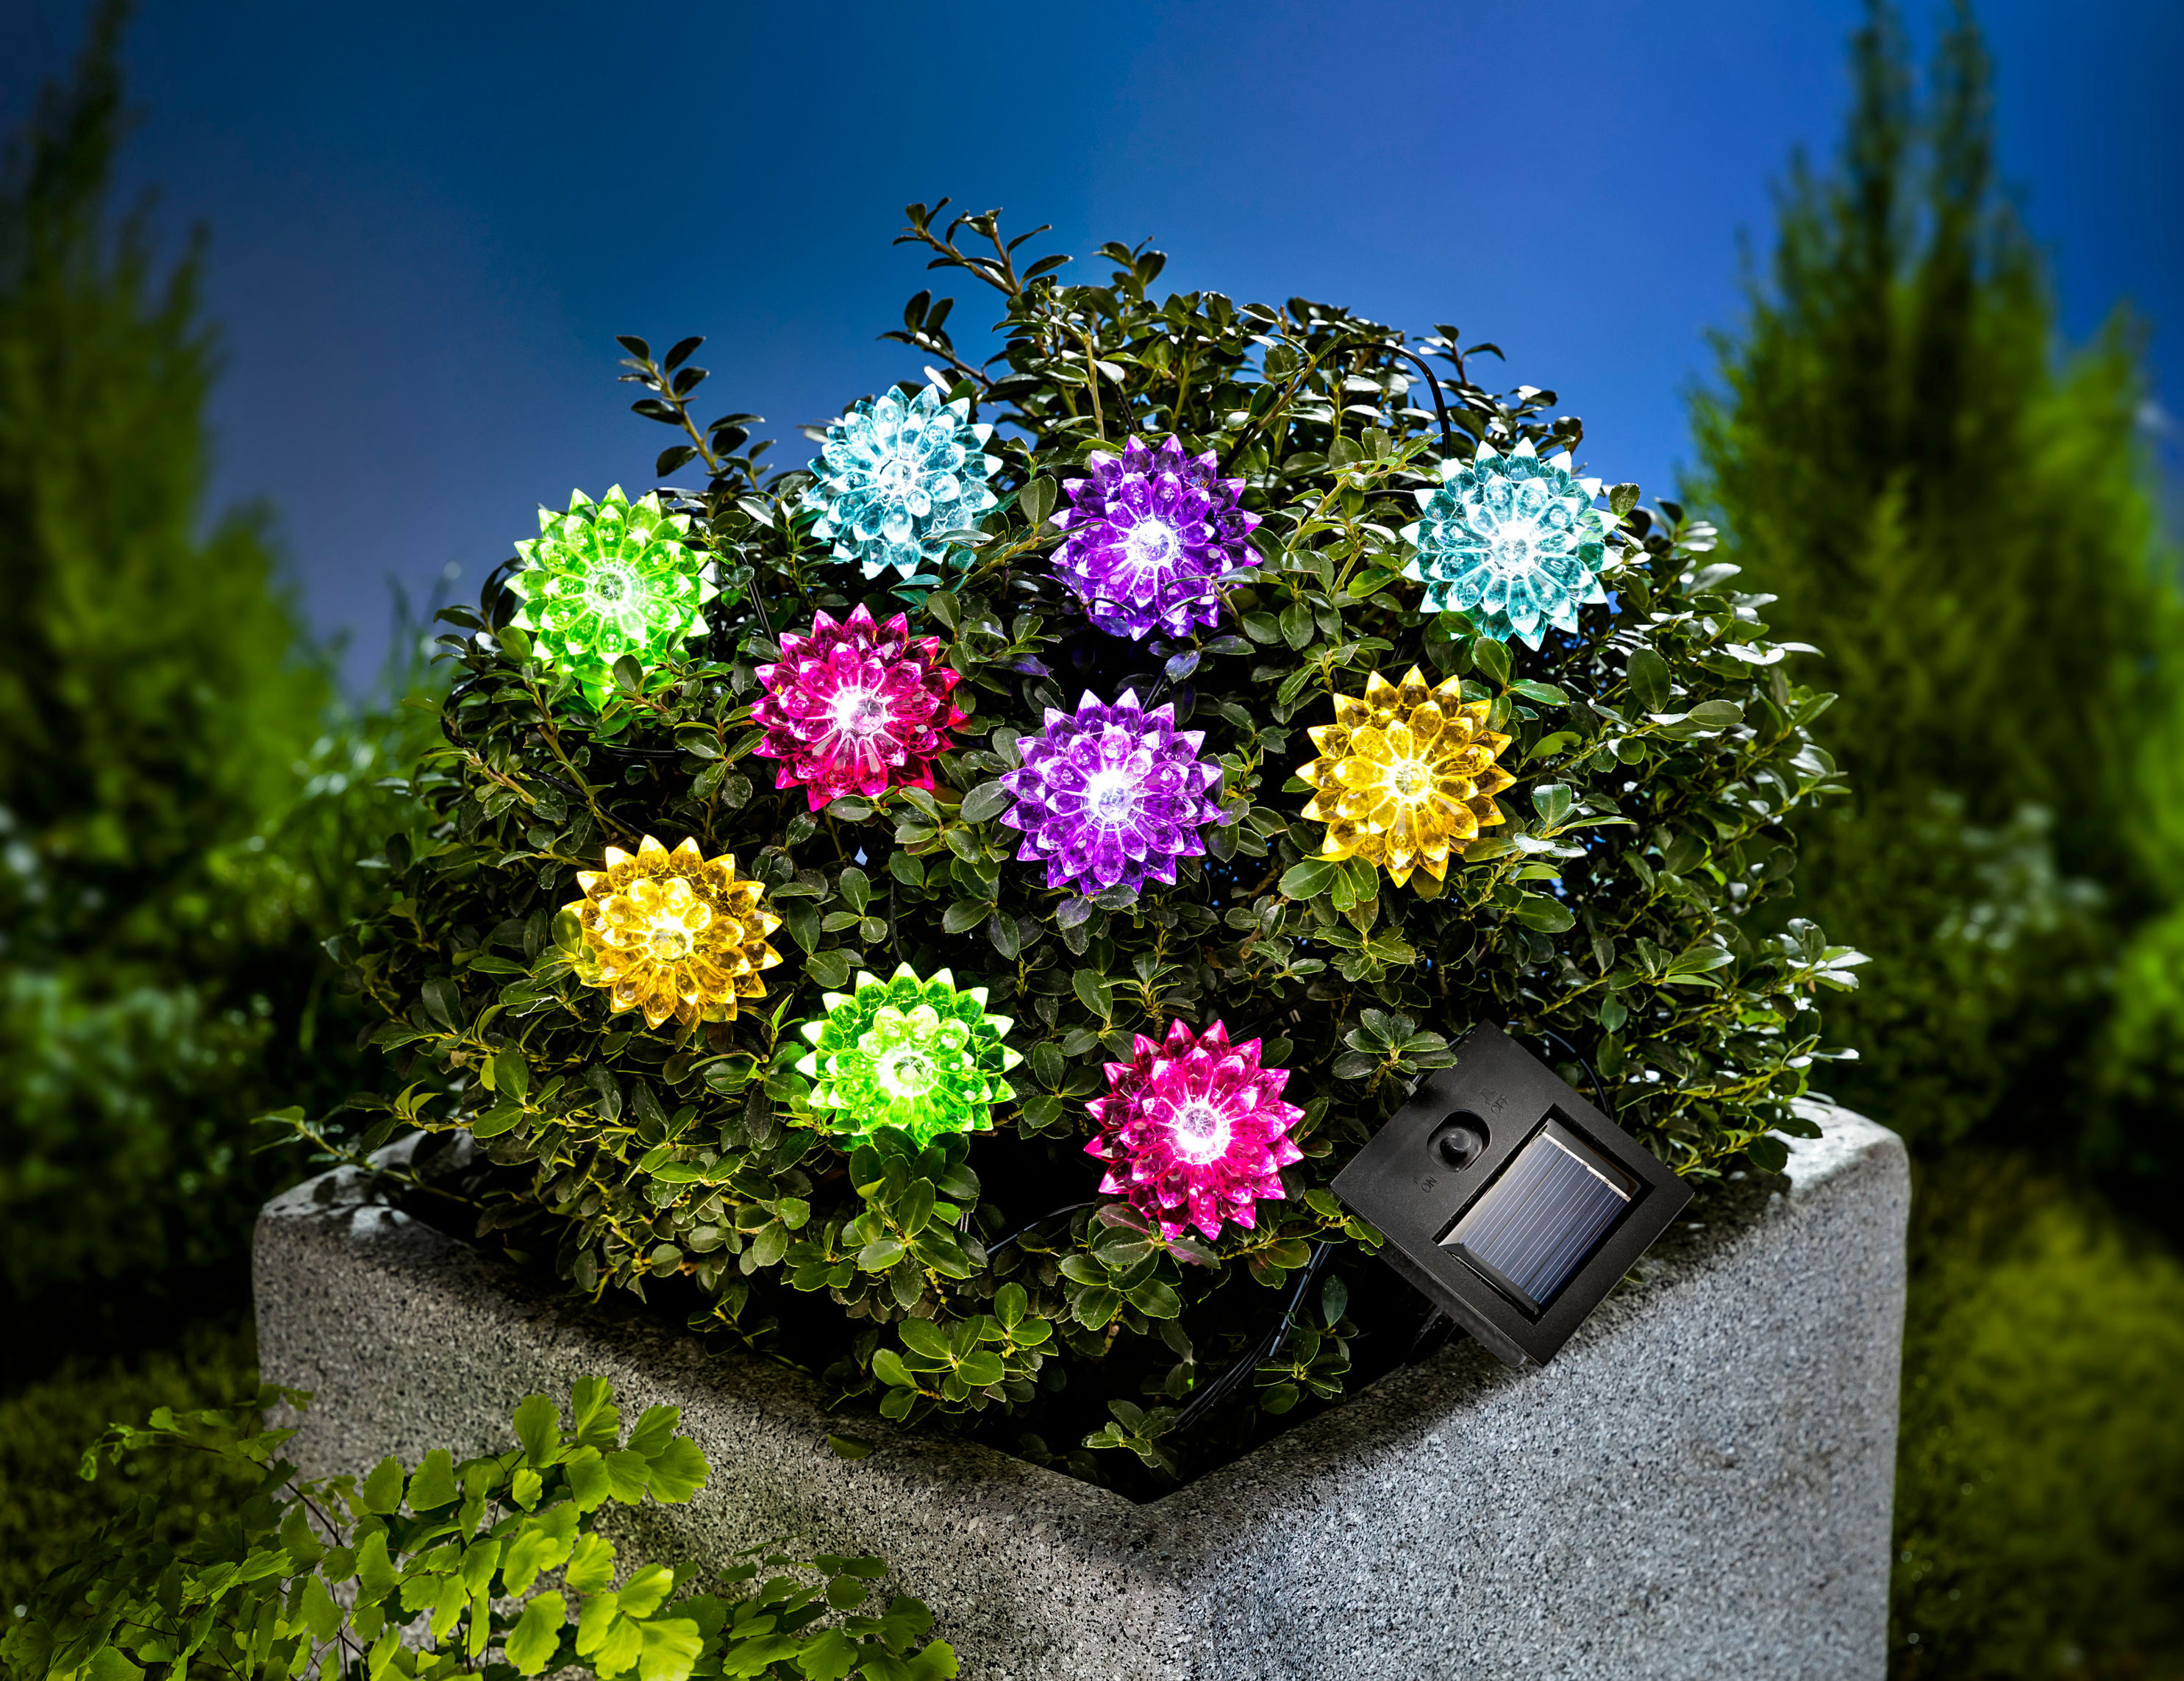 Solar-Lichterkette Flower Power 180 cm bestellen | Weltbild.at